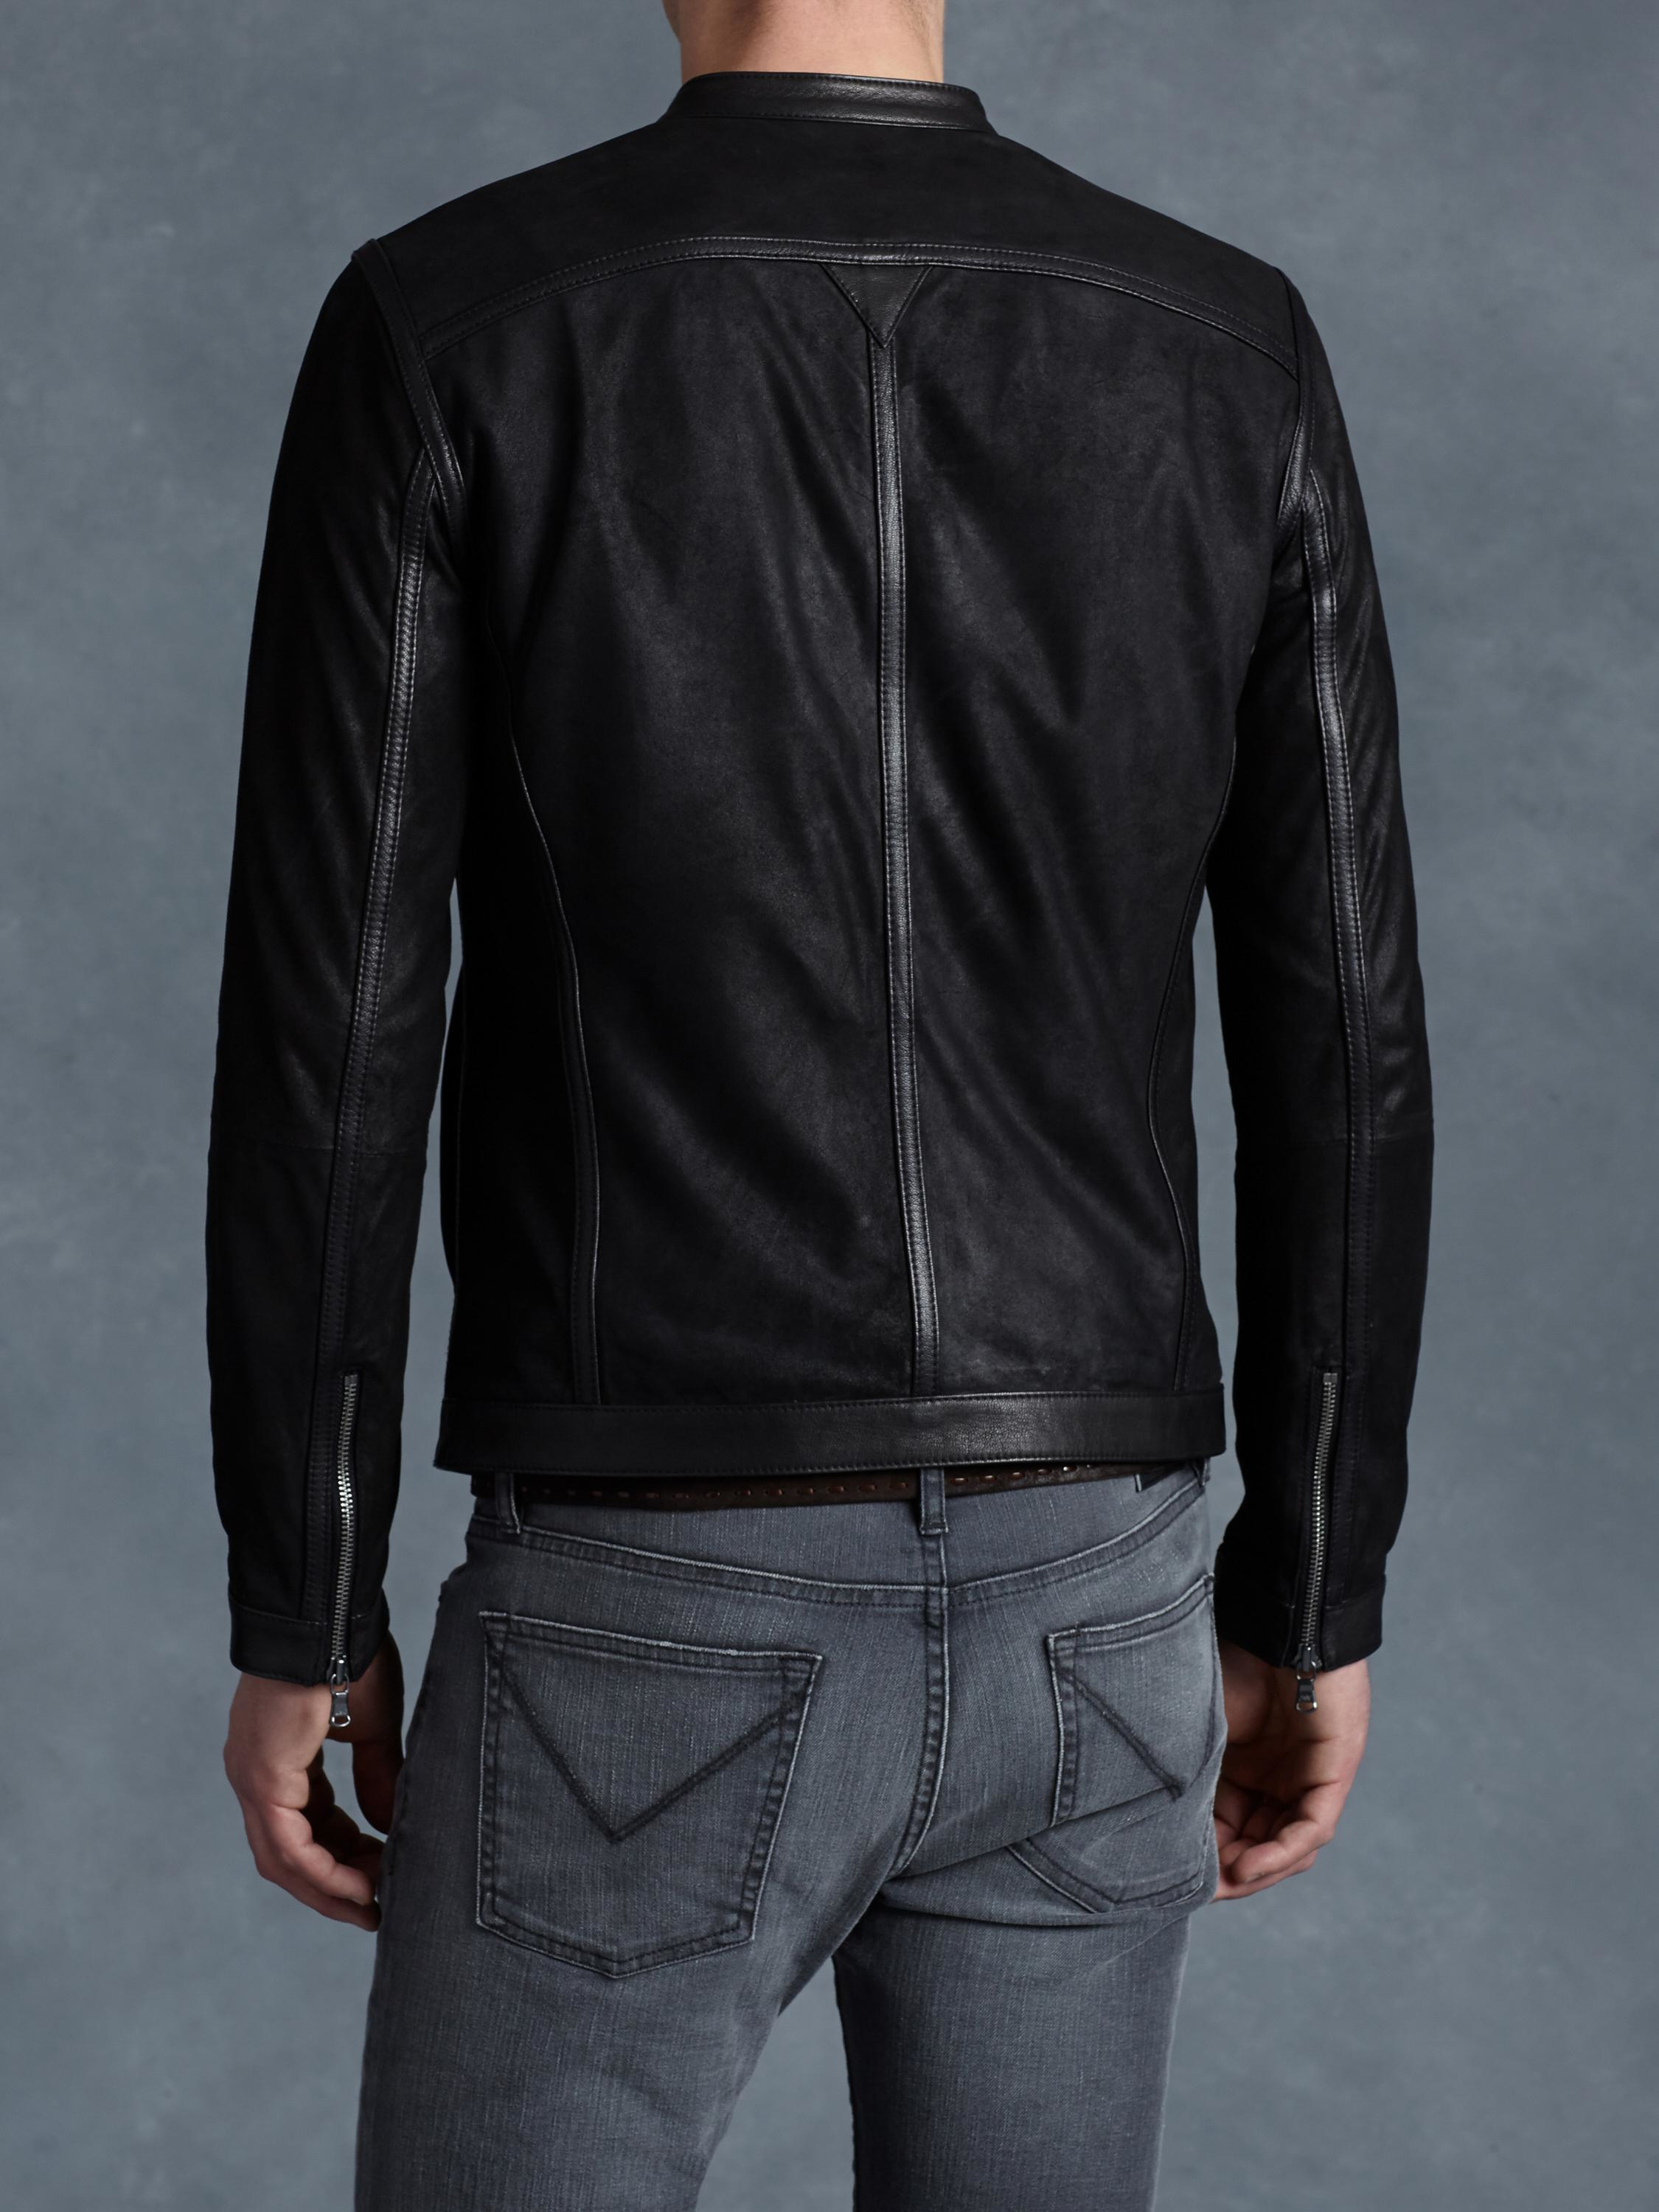 Lyst - John Varvatos Leather Racer Jacket in Black for Men